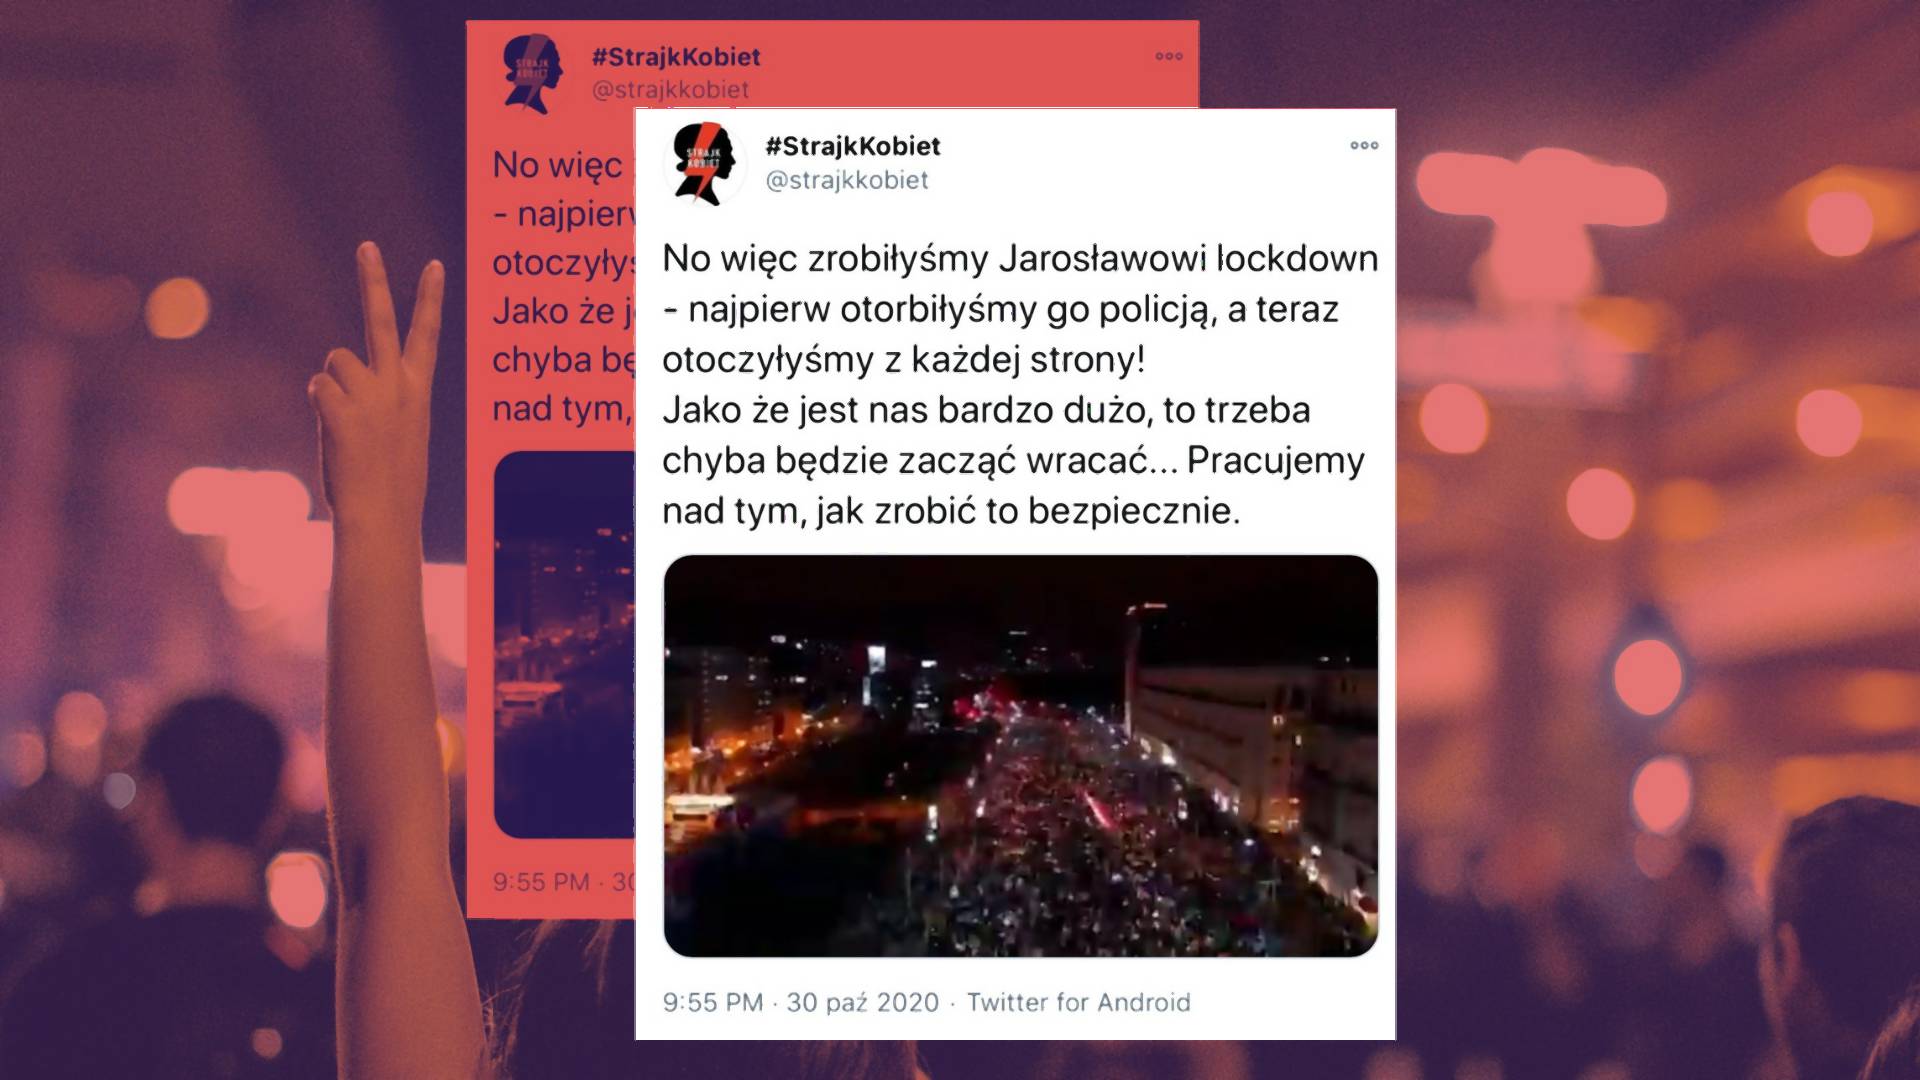 "Zrobiłyśmy Jarosławowi lockdown". Film Strajku Kobiet pokazuje ułamek skali protestu, a i tak robi wrażenie